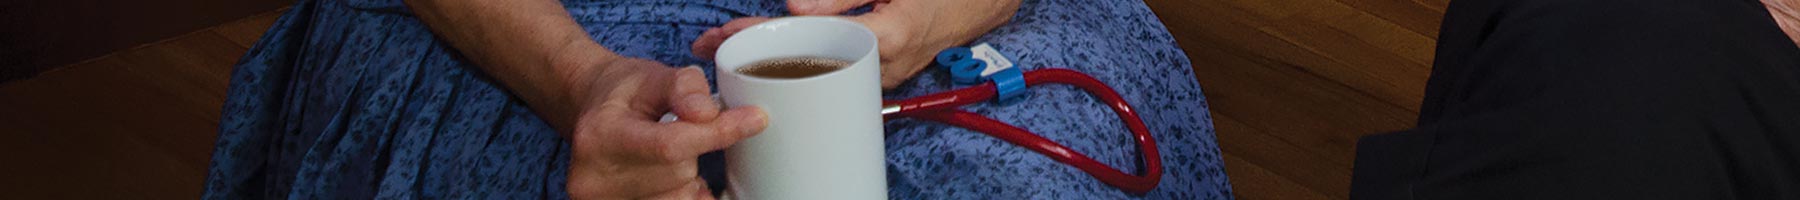 hand holding a coffee mug beside a stethoscope